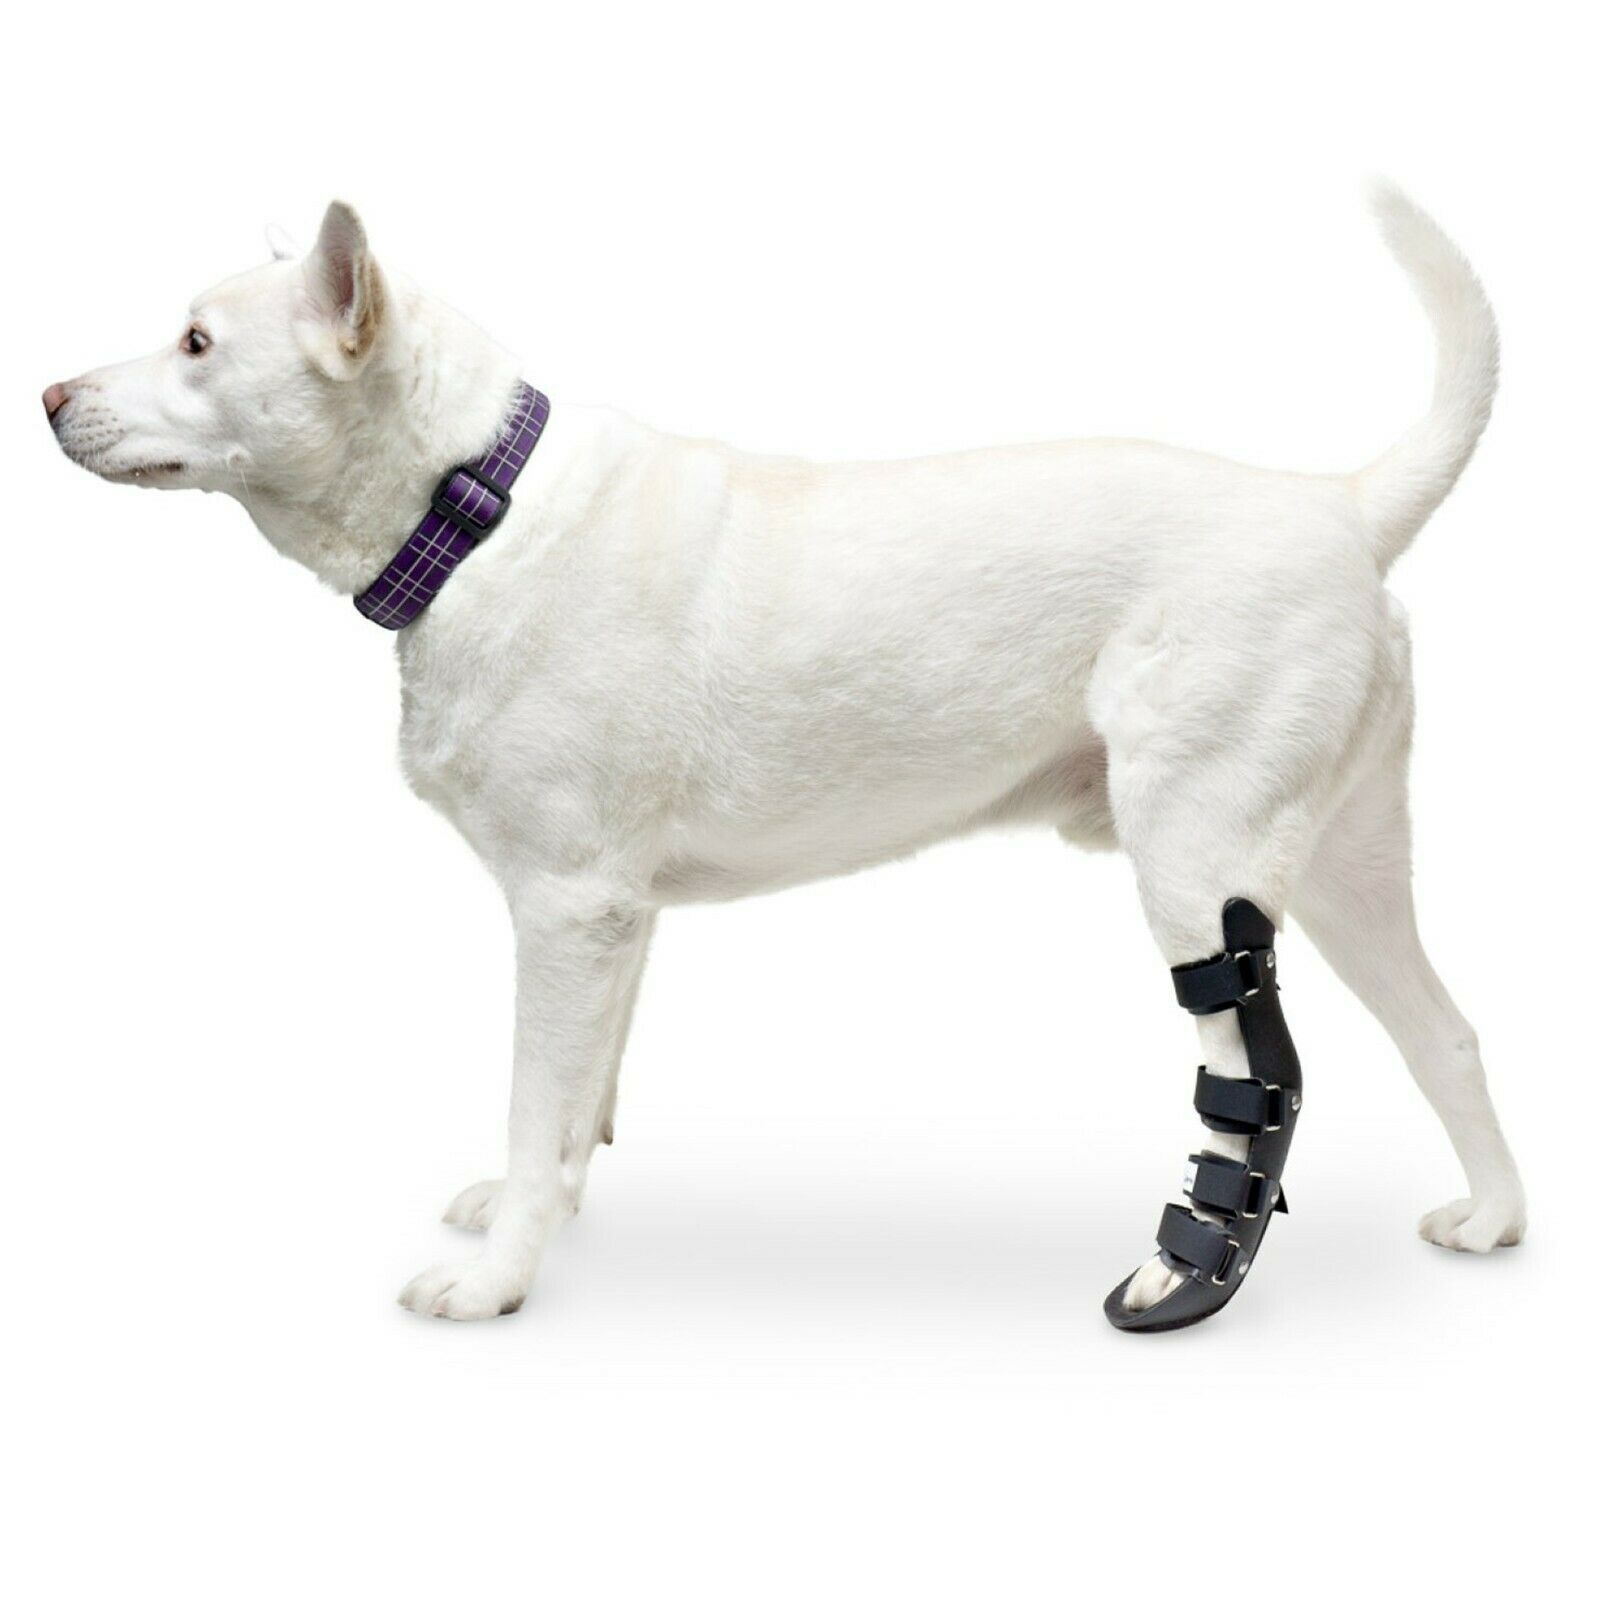 Walkin' Pet Splint For Dogs | Canine Rear Foot Splint Helps Brace Lower Leg